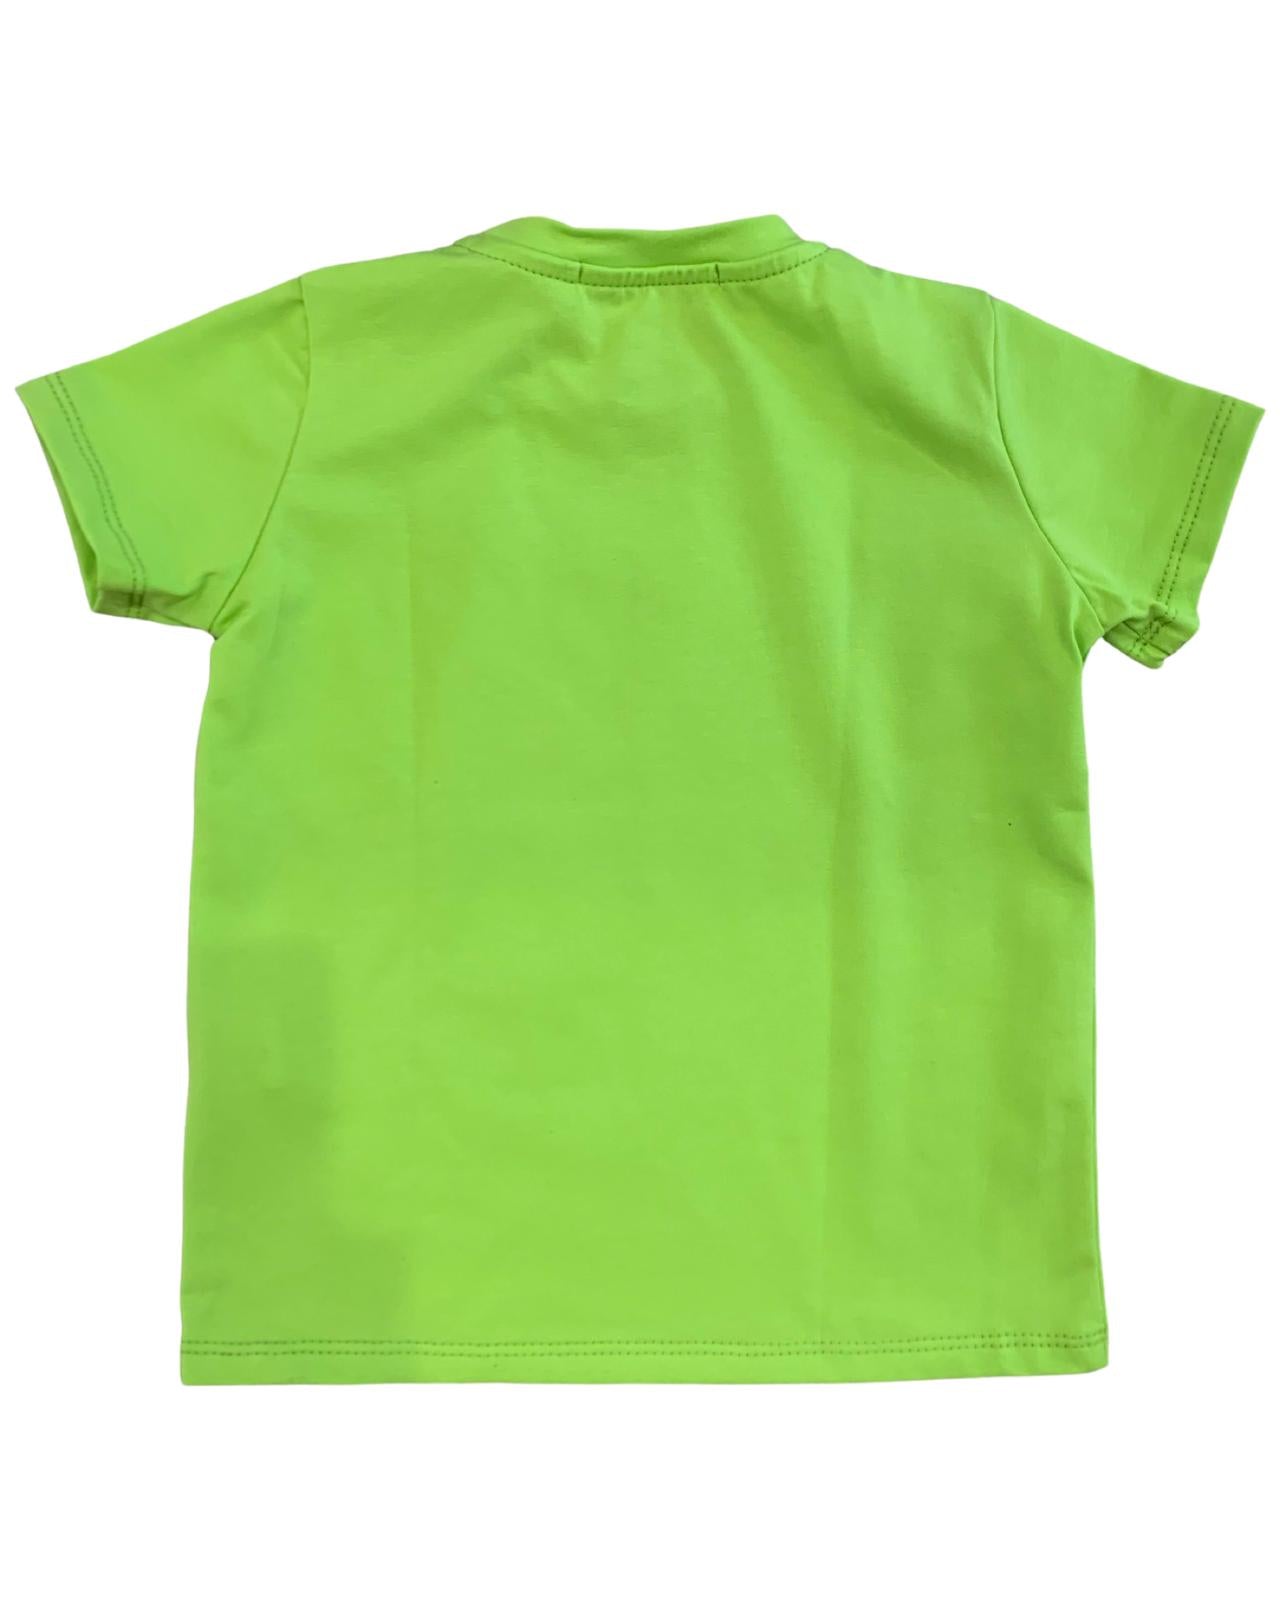 Maglietta Squalo per Bambino da 2anni a 10anni MOUSSE YKTS345G